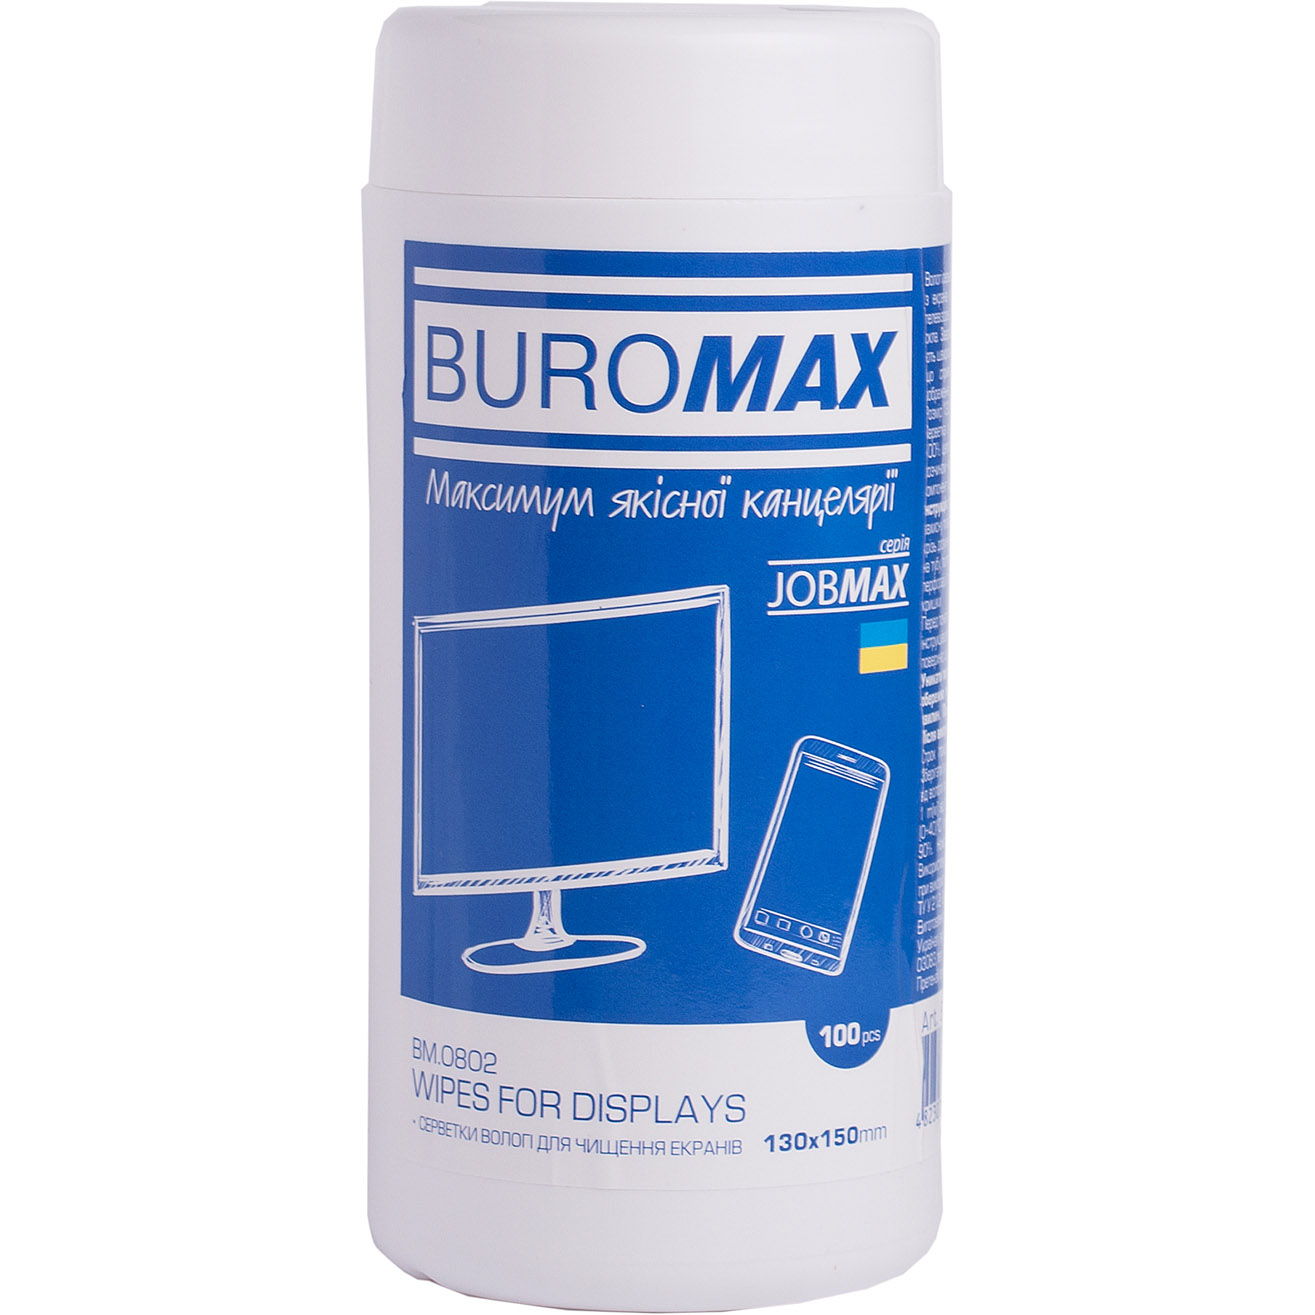 Серветки для чищення екранів і оптики Buromax Jobmax 100 шт. у тубі (BM.0802) - фото 1